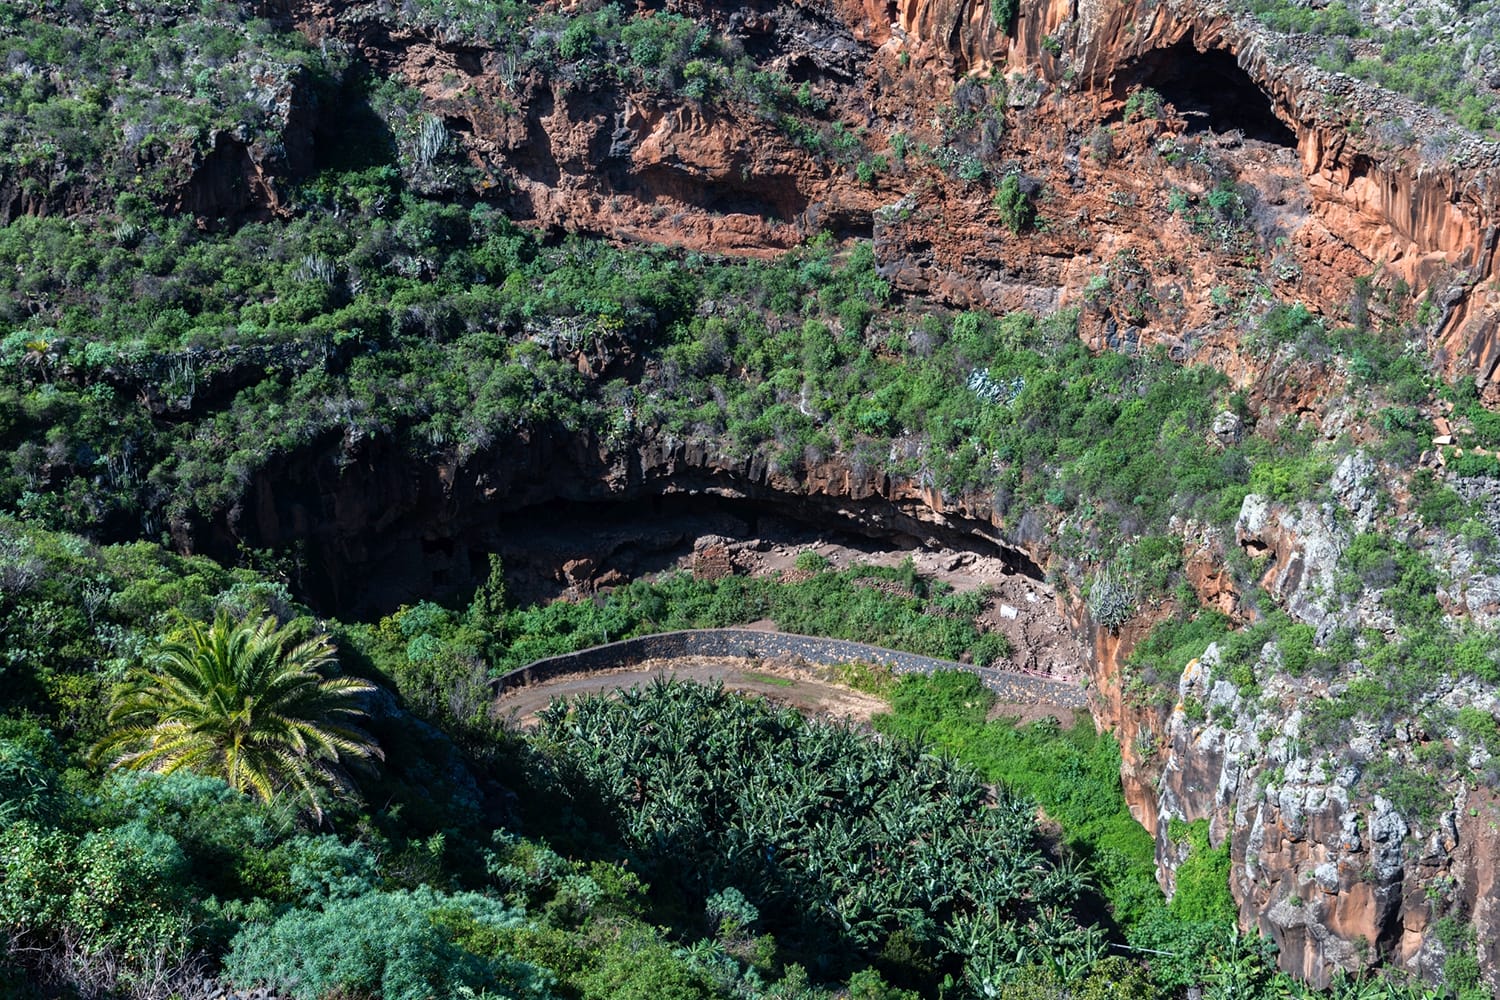 Historical caves at El Tendal at La Palma, Canary islands, Spain.